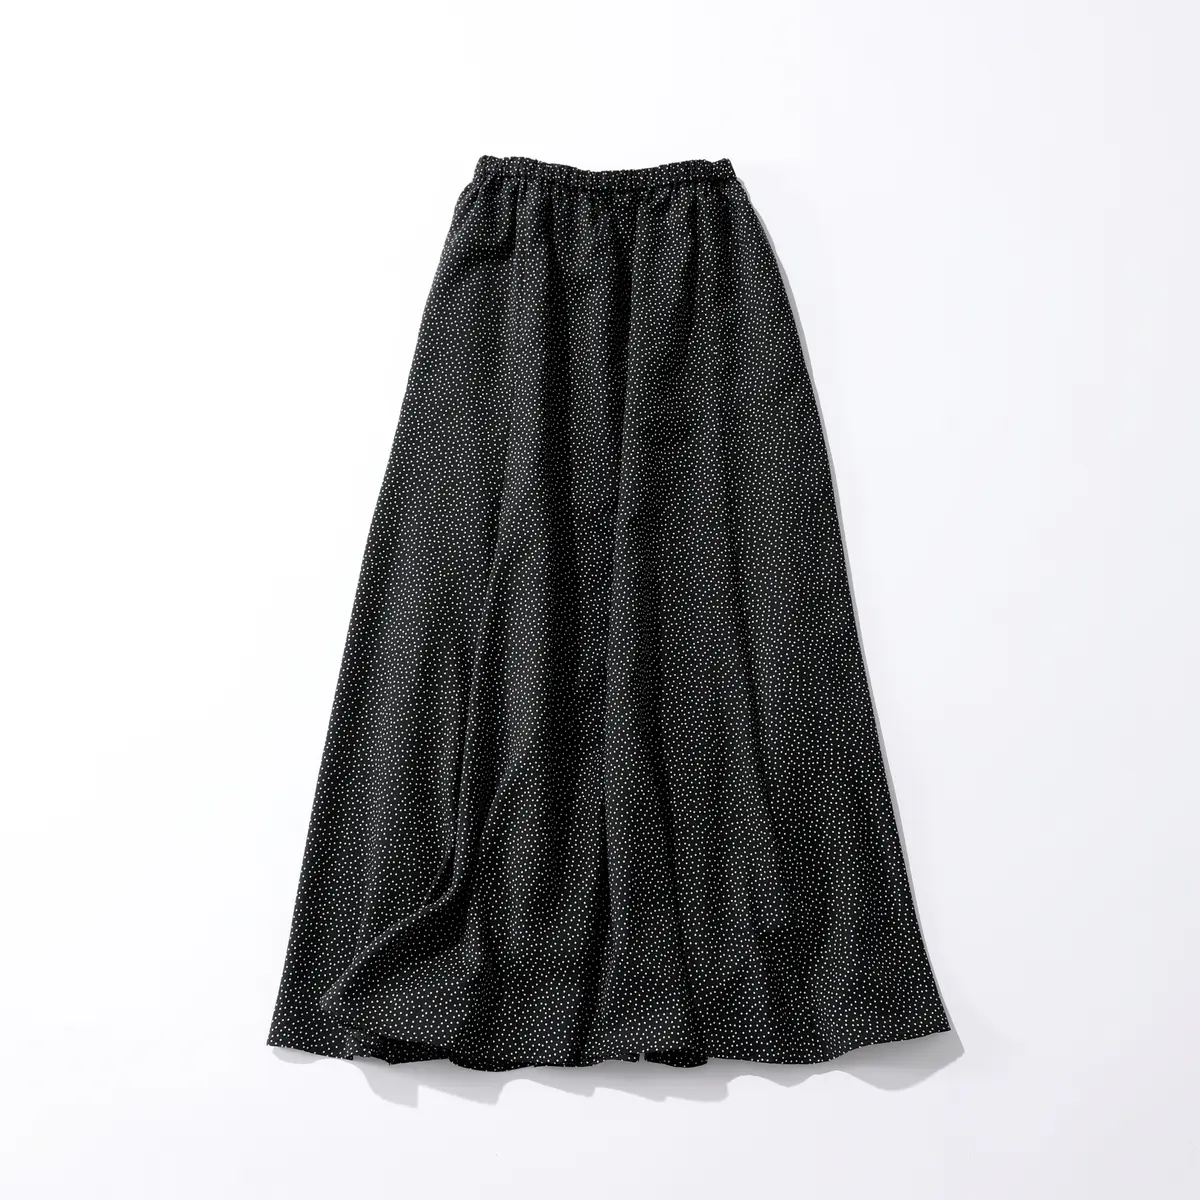 『マルモア』のドット柄スカート